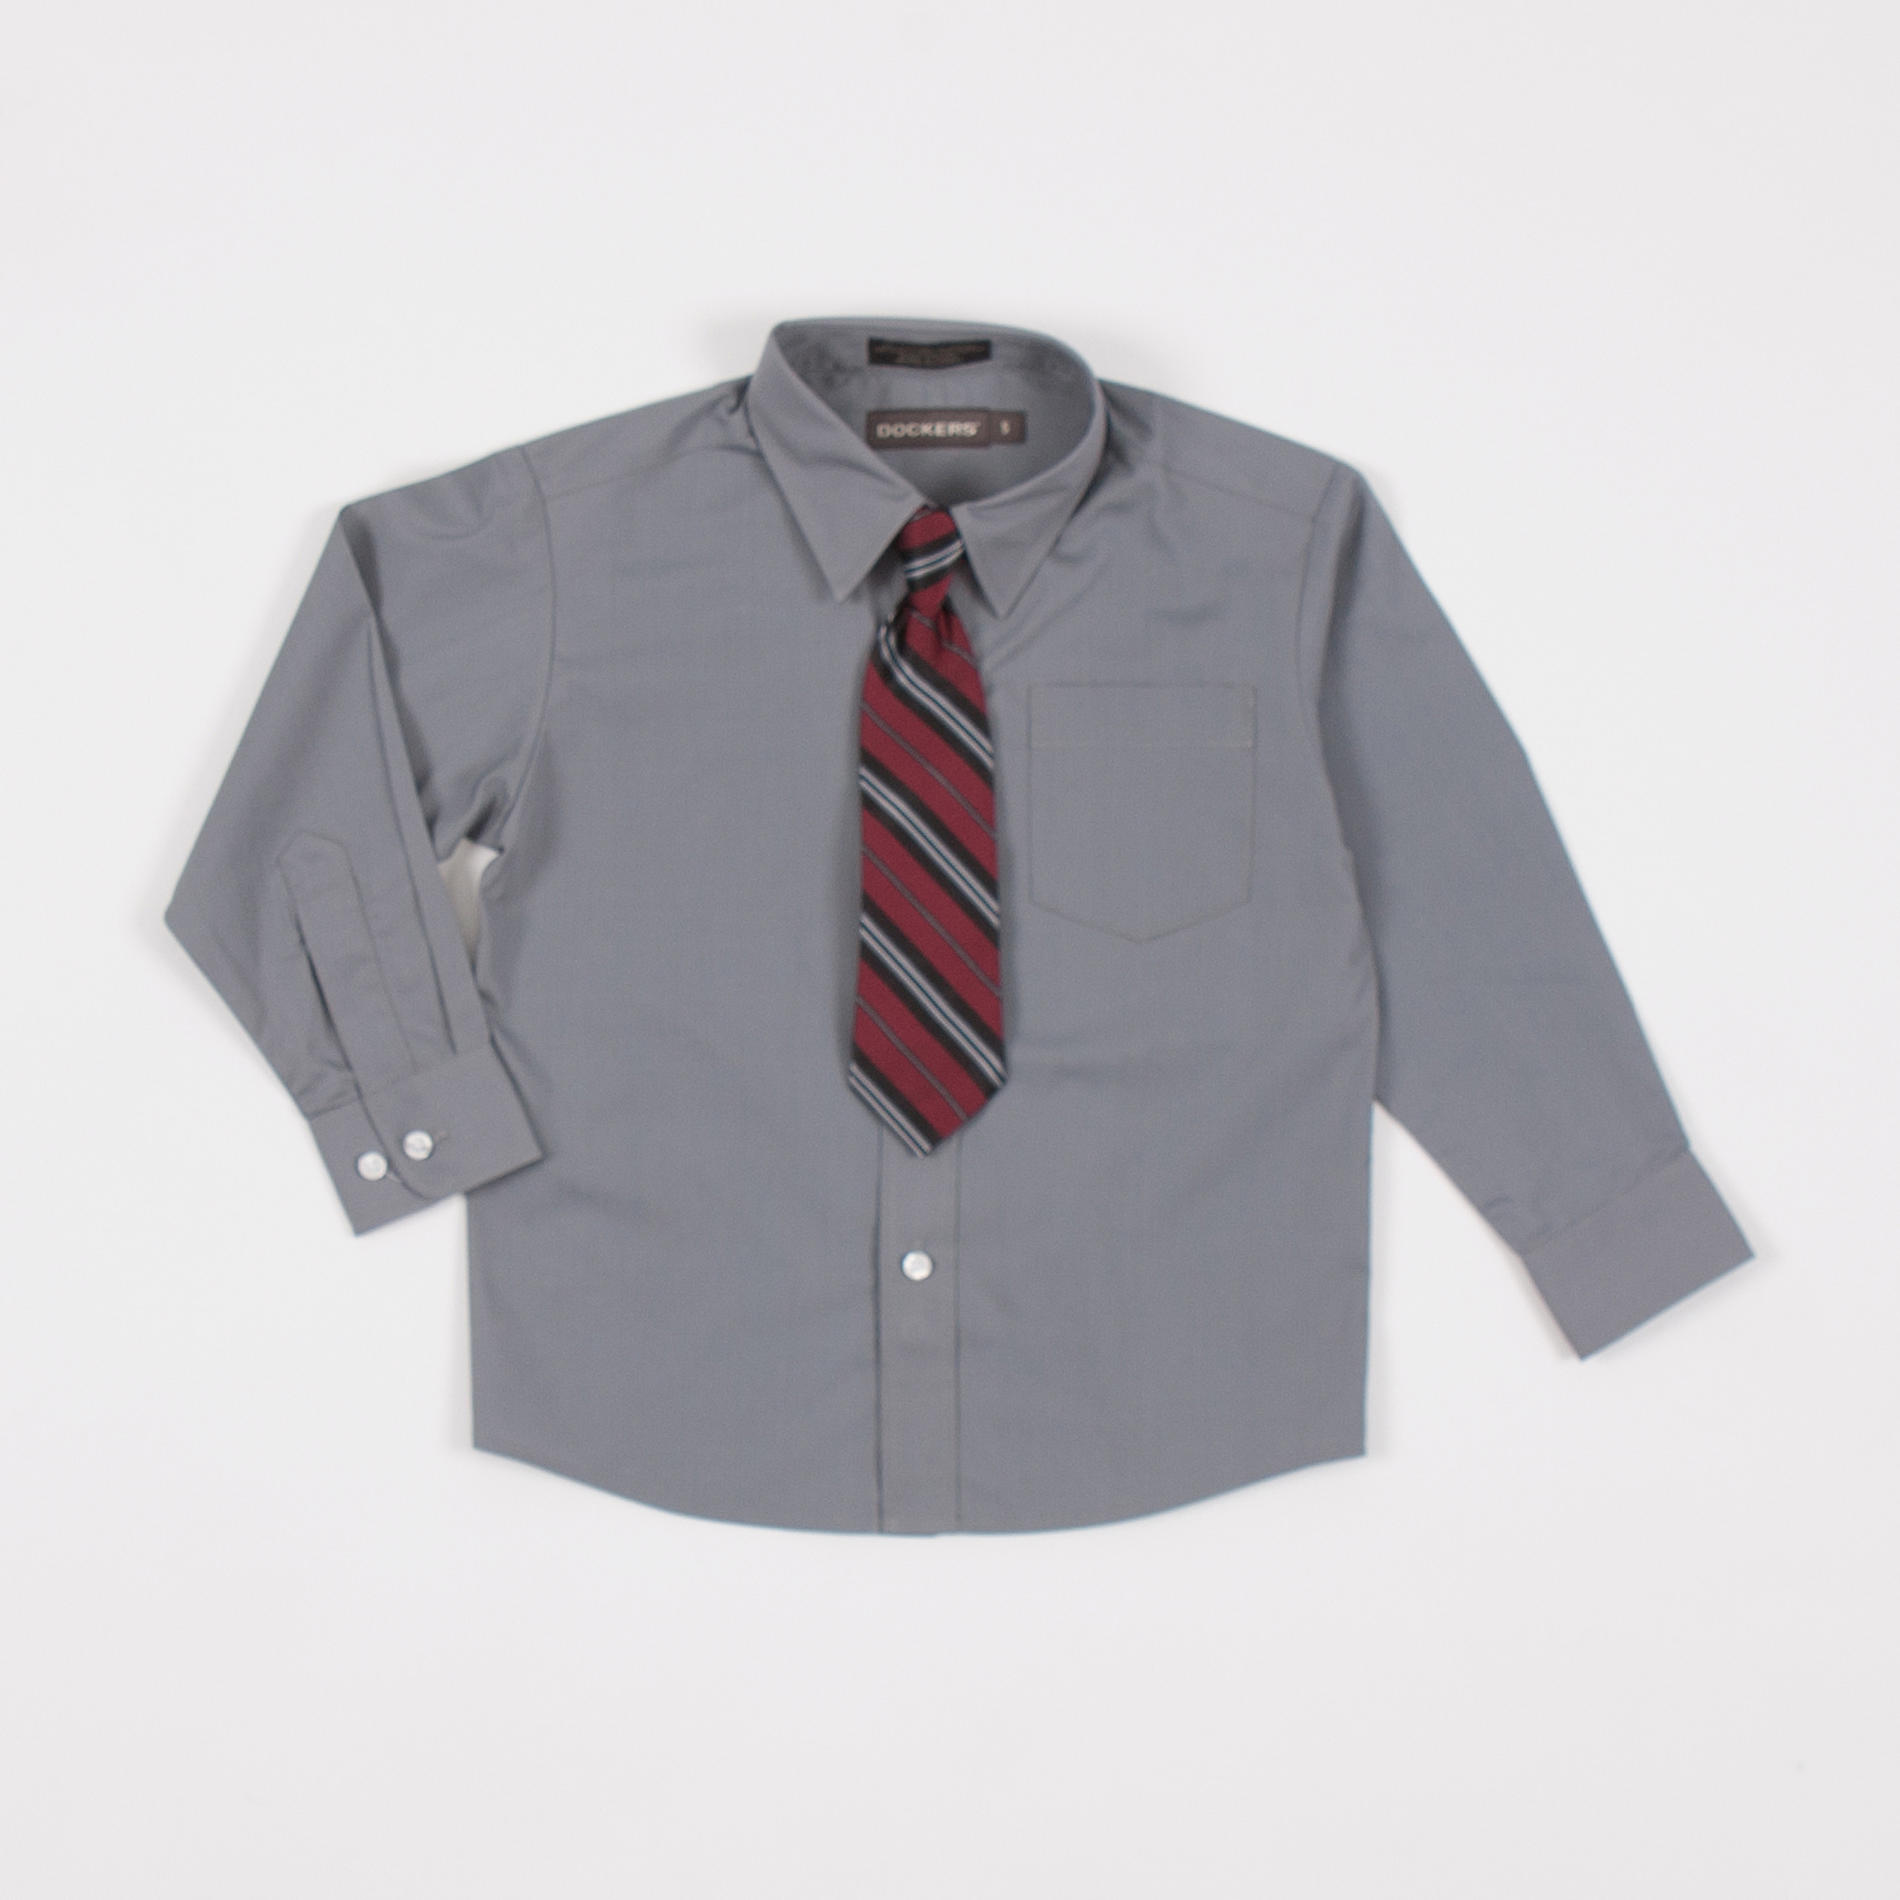 Dockers Boy's Dress Shirt & Tie - Striped